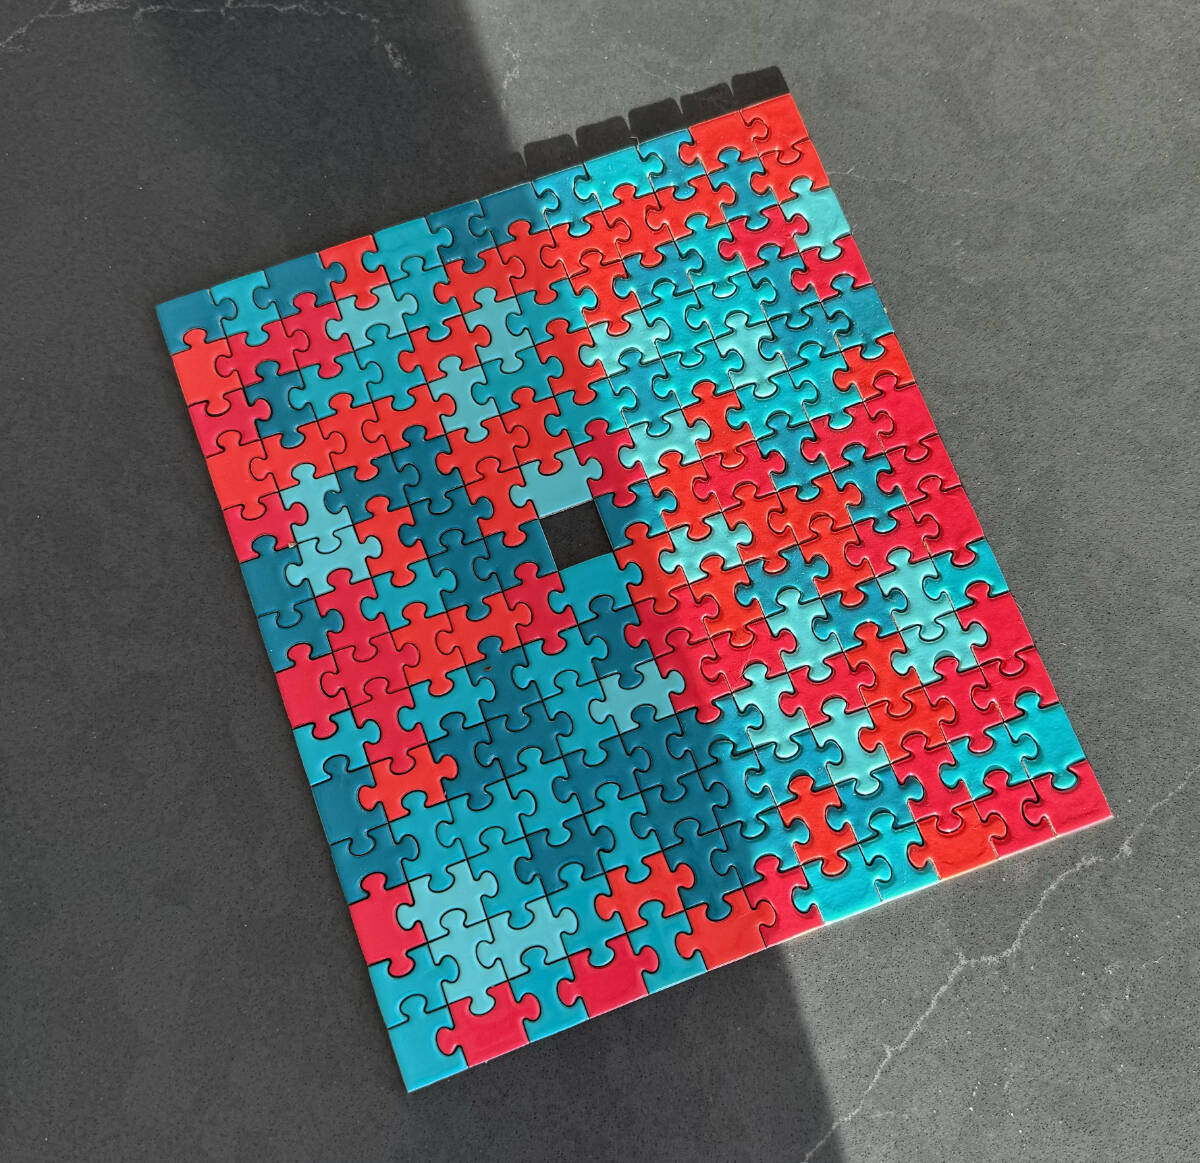 Puzzle Downtown, 6 000 pieces